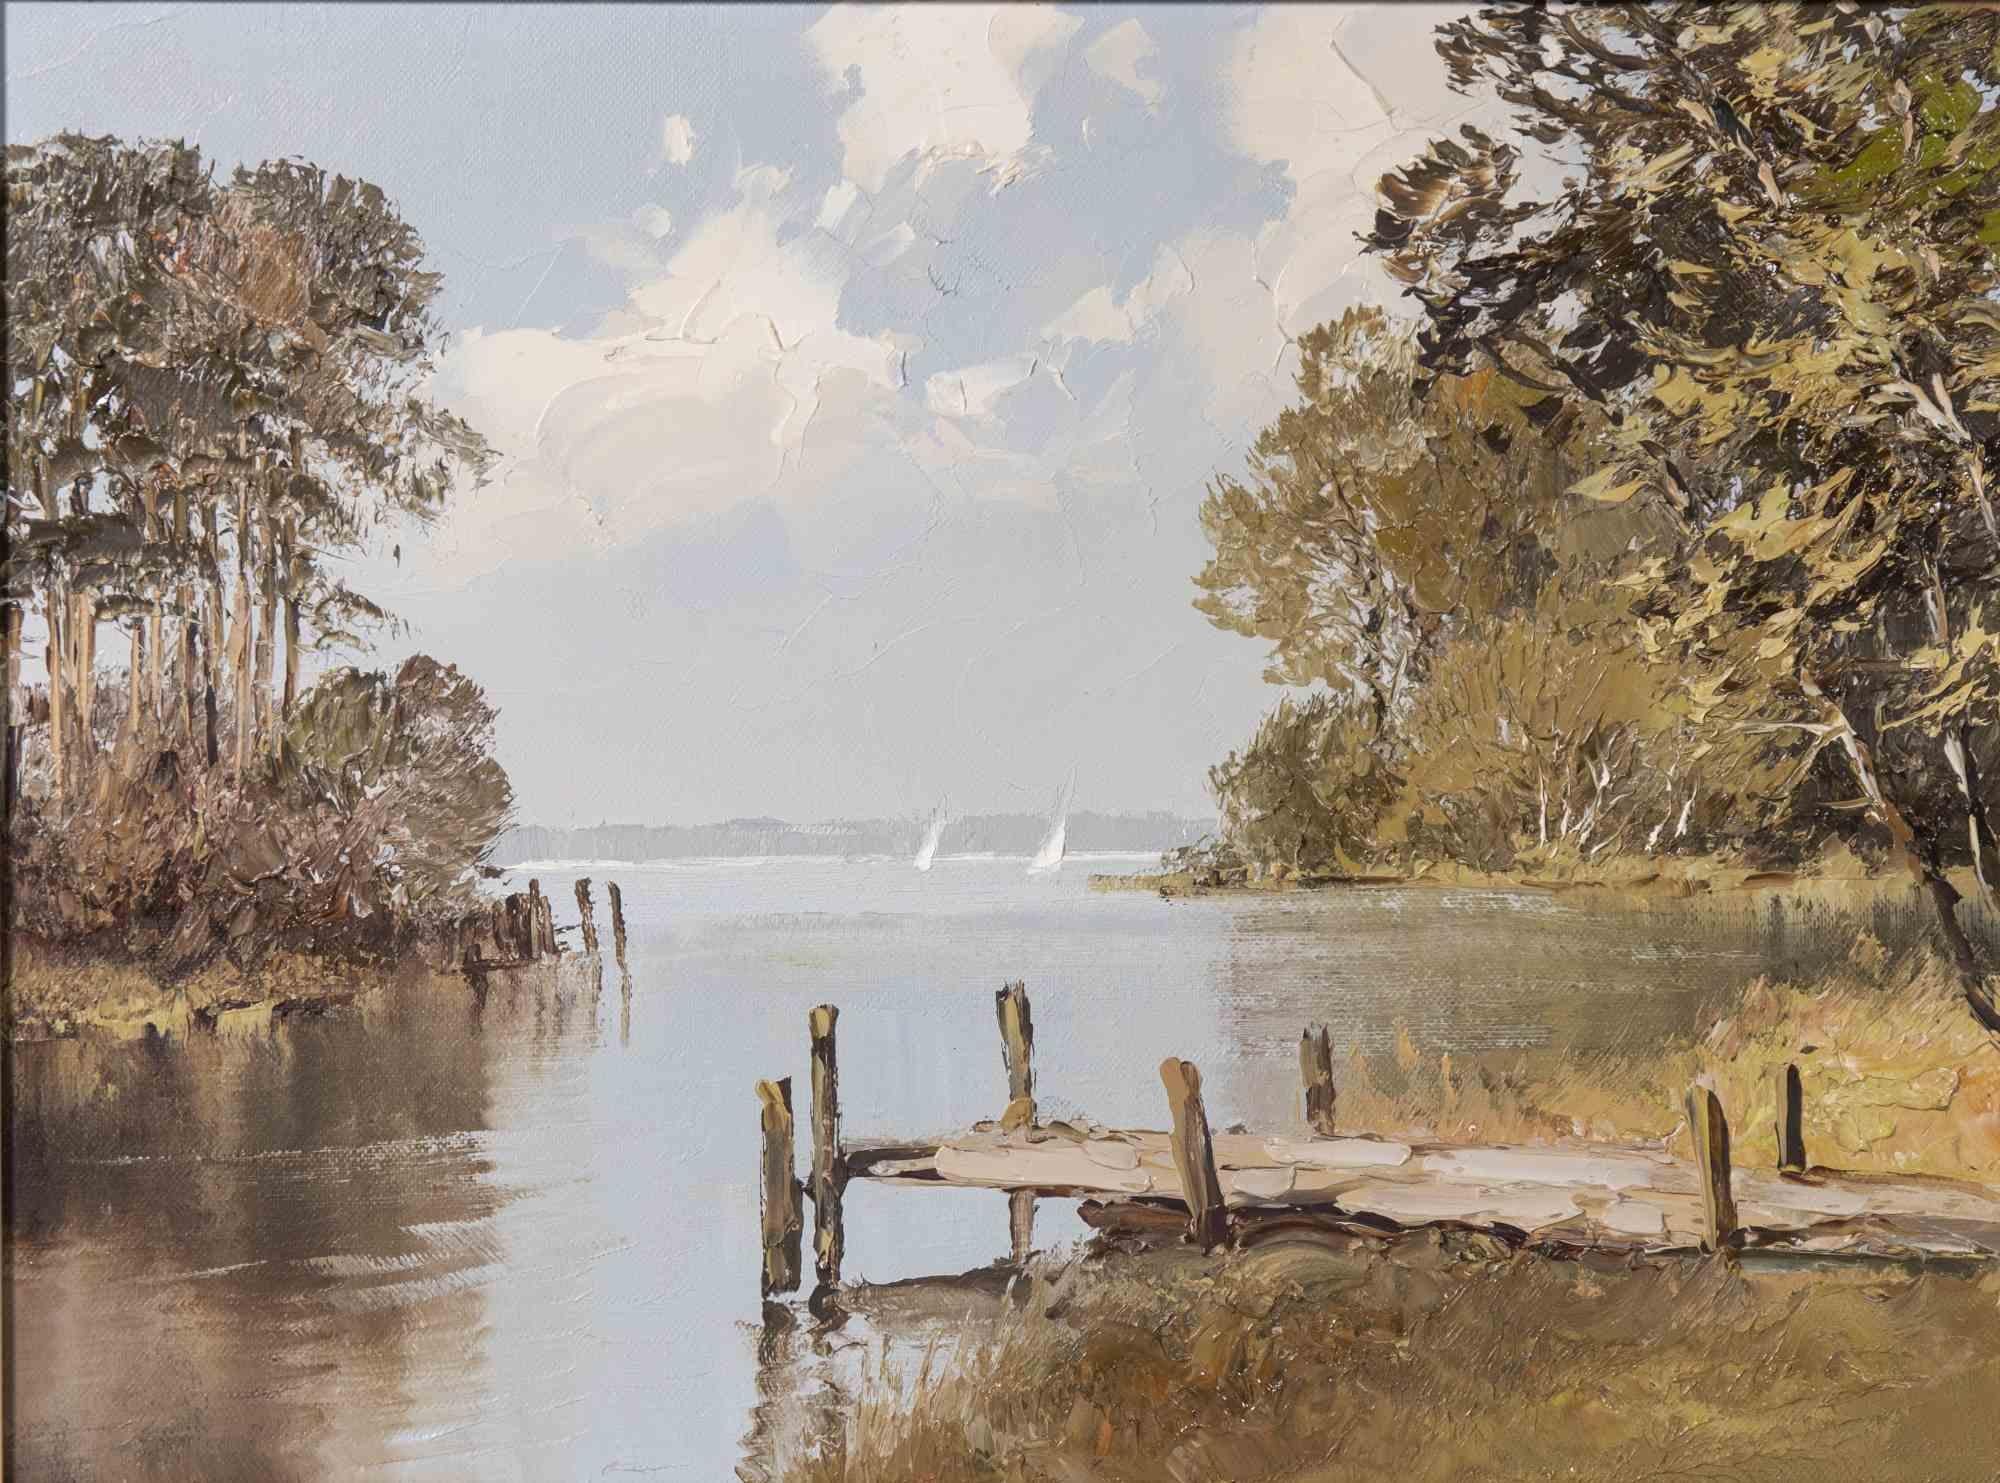 Seelandschaft mit Steg und Bäumen am Ufer ist ein Gemälde von Erich Paulsen aus dem späten 20. Jahrhundert.

Gemischte farbige Ölgemälde auf Leinwand.

Beschriftung: verso von unbekannter Hand auf dem Keilrahmen beschriftet

Der Maler zeigt uns hier